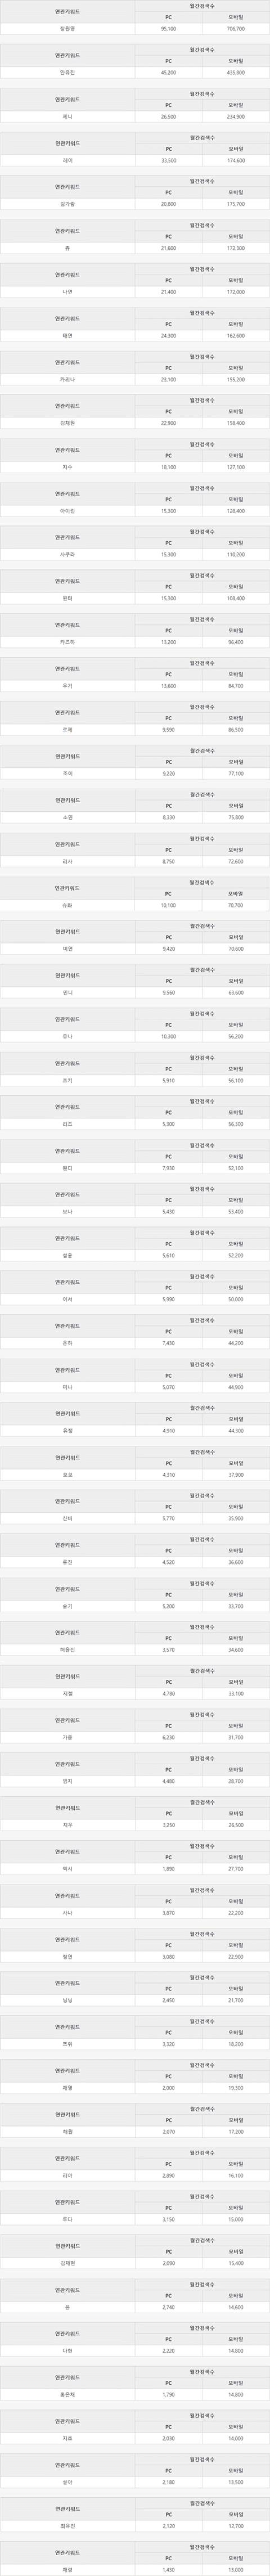 여자아이돌 네이버 월간 검색량....jpg | 인스티즈